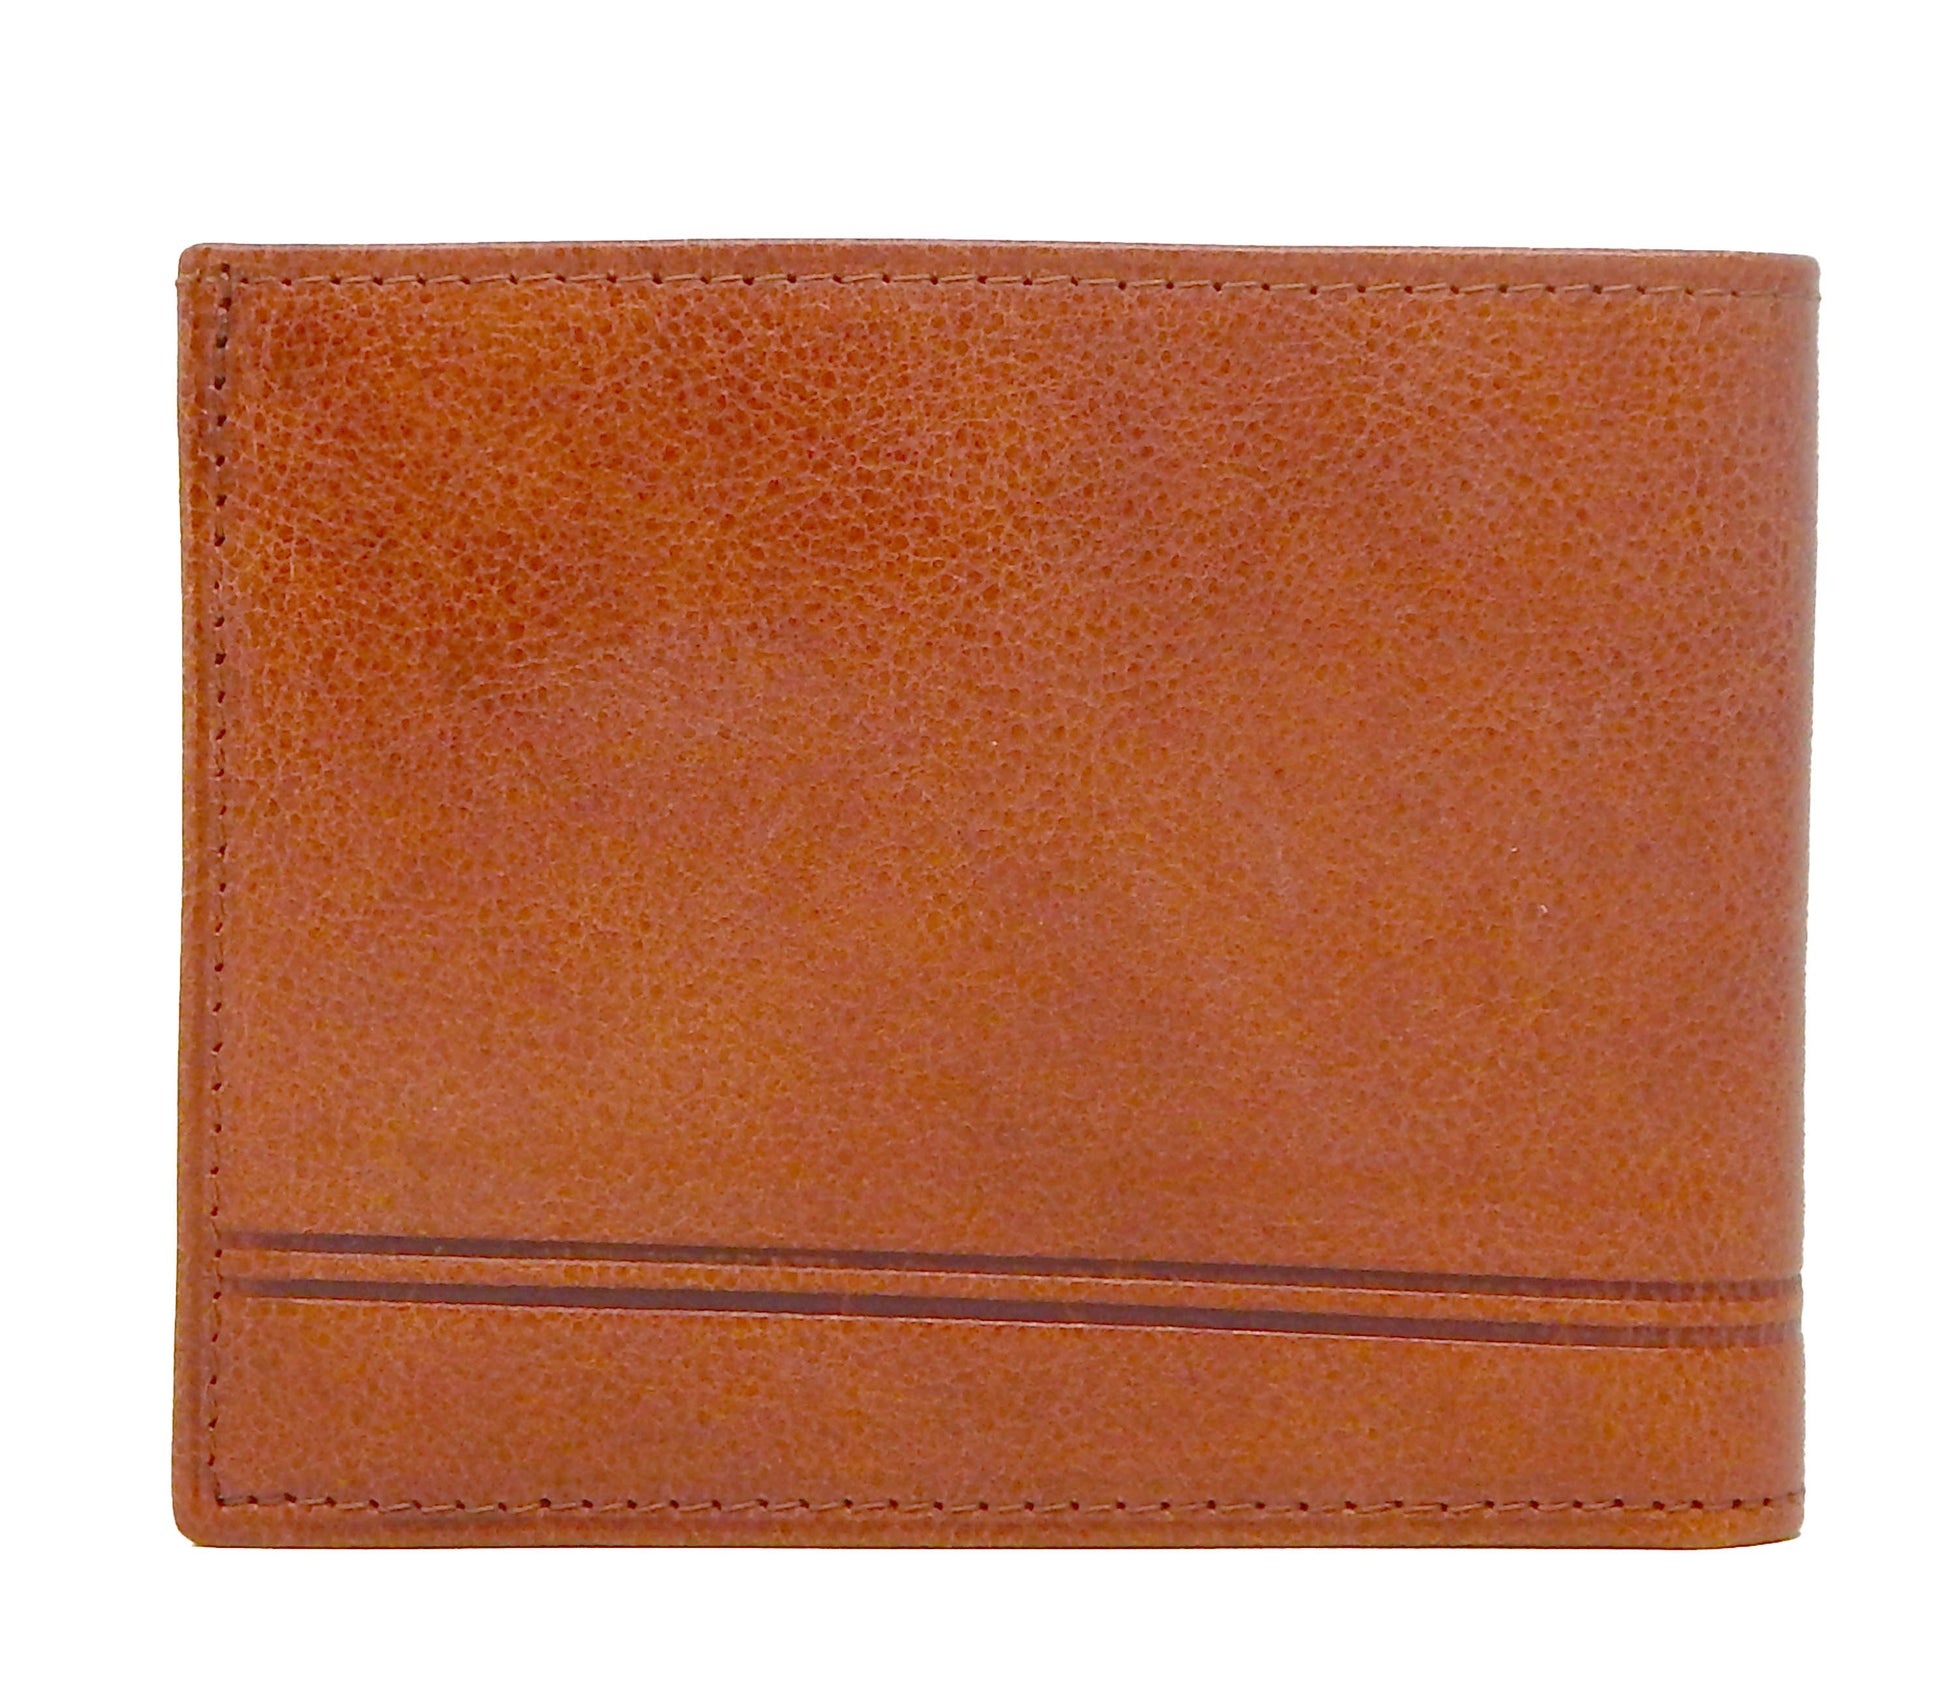 #color_ SaddleBrown | Cavalinho Men's Trifold Leather Wallet - SaddleBrown - 28610507.13.99_3